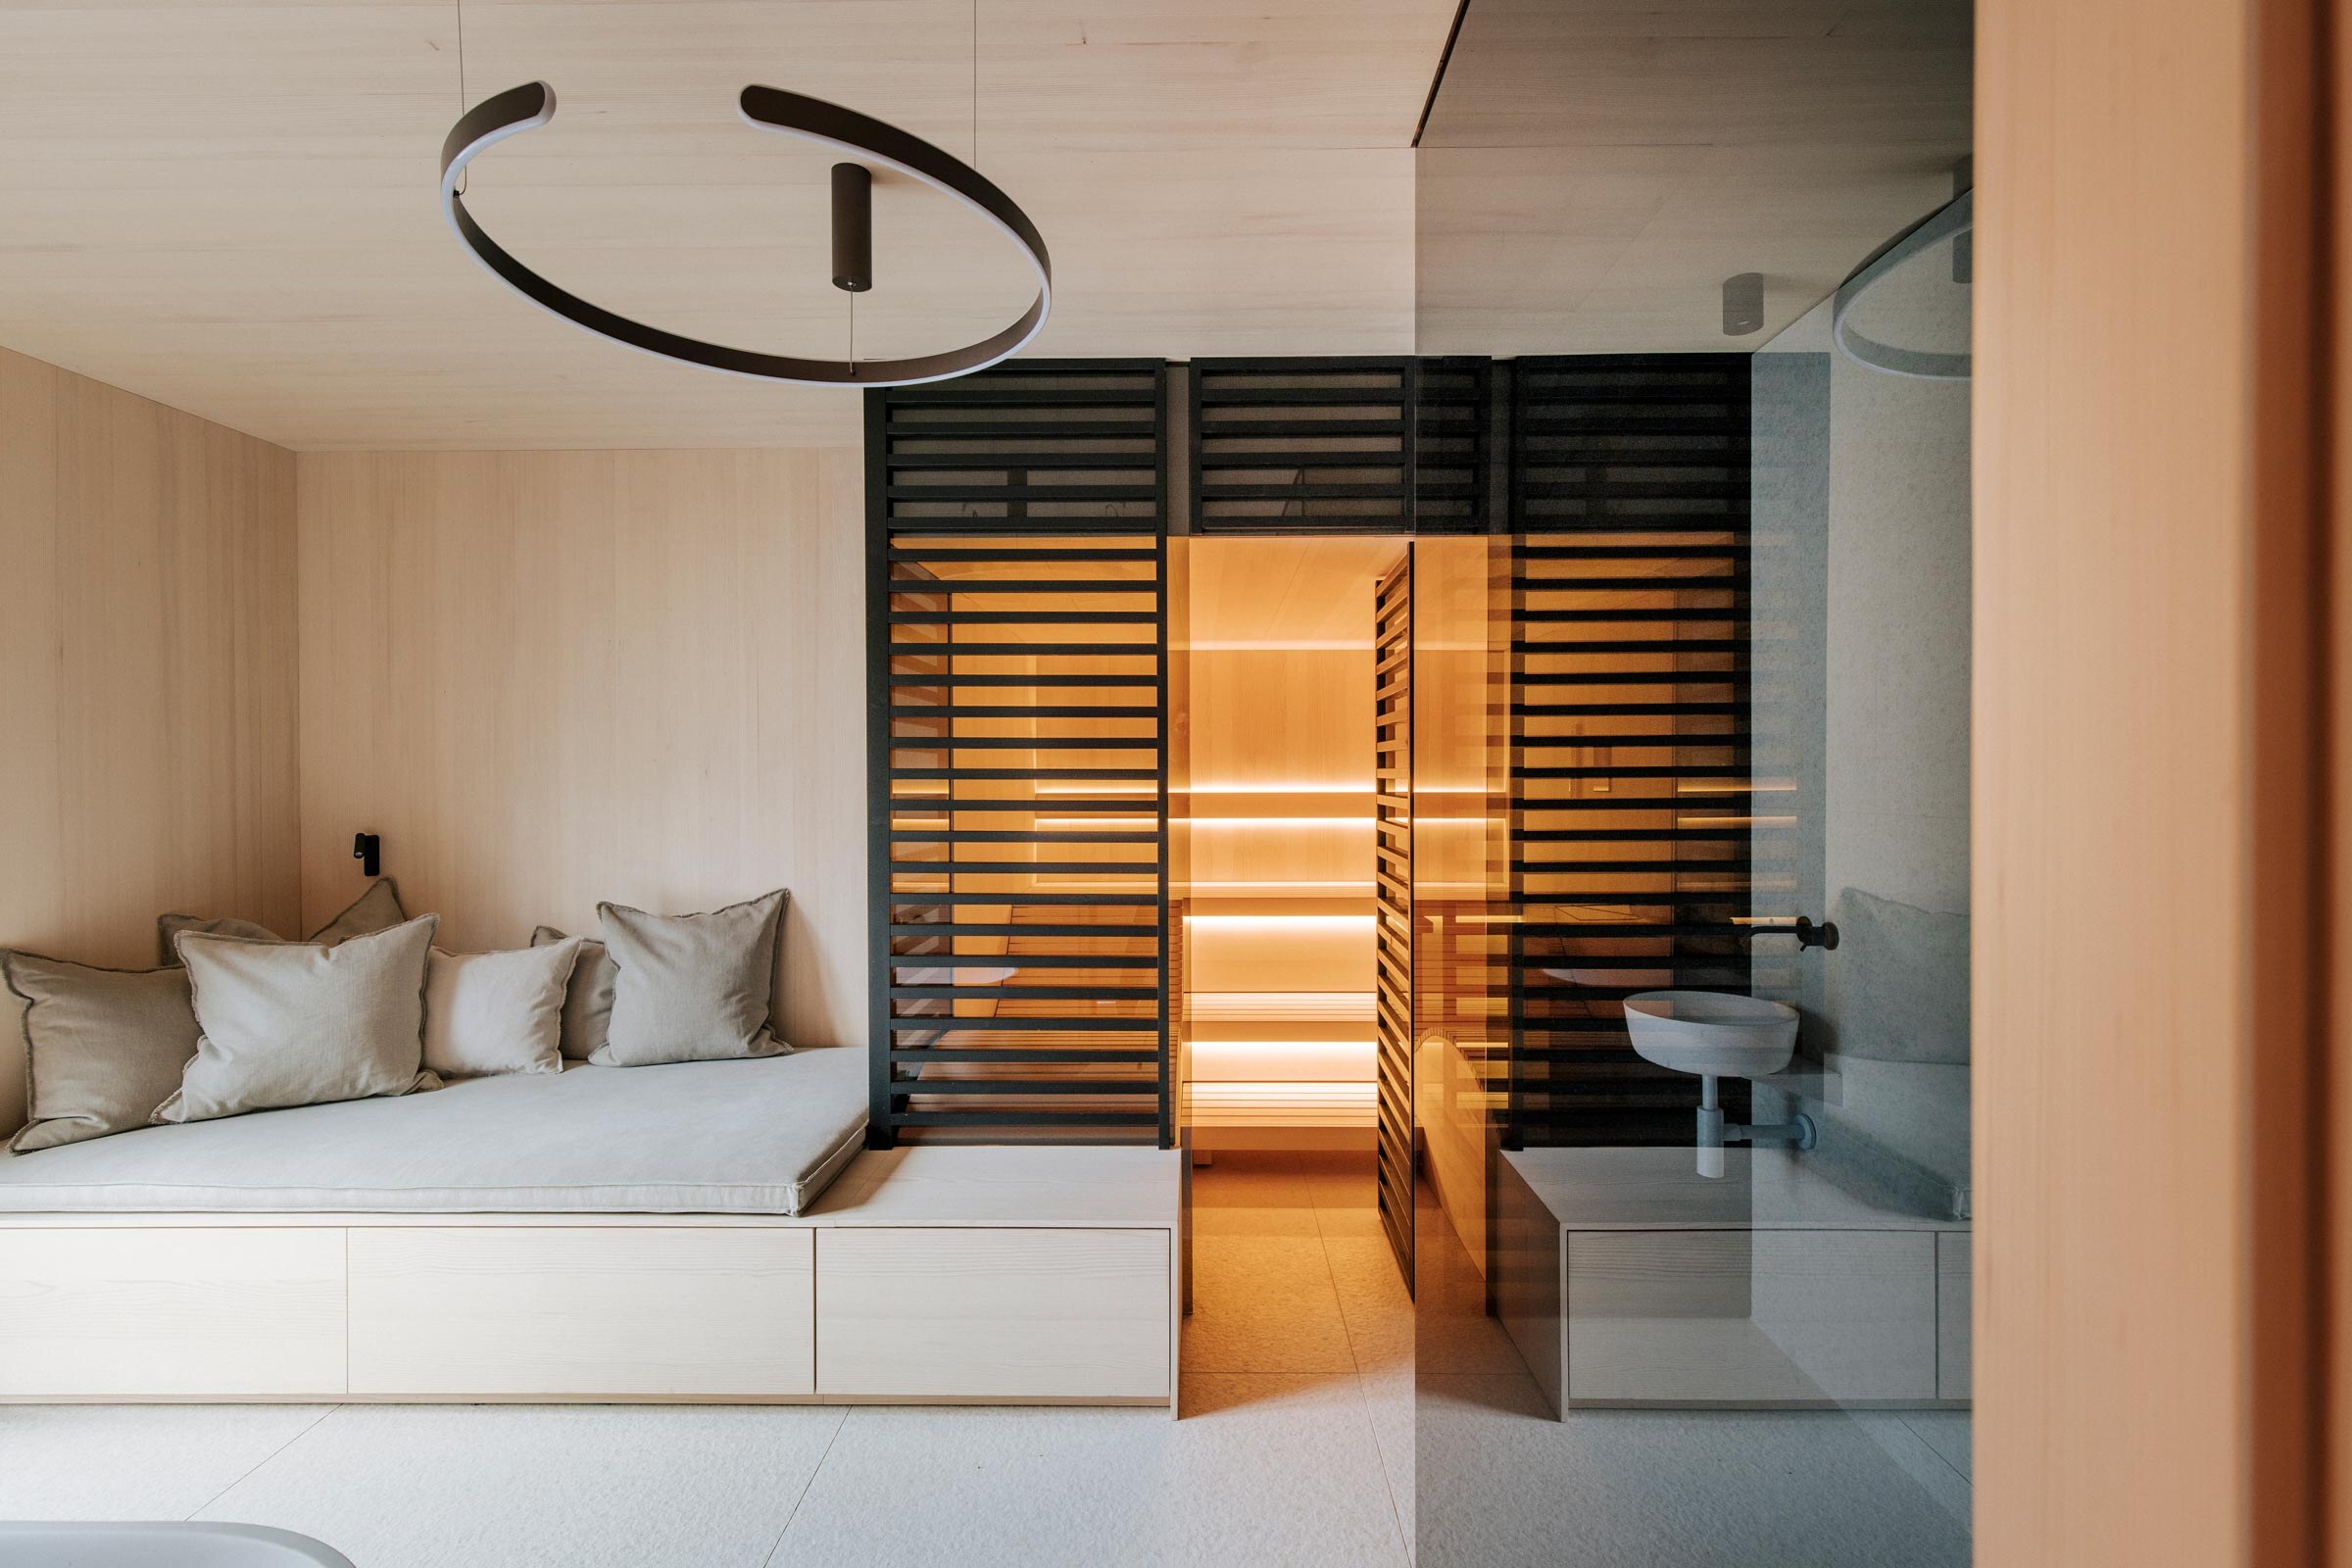 Beleuchtete Sauna von Deisl im minimallistischen Scandi Stil, mit schwarzer Holzverkleidung als Sichtschutz in einem Badezimmer mit heller Holzverkleidung.